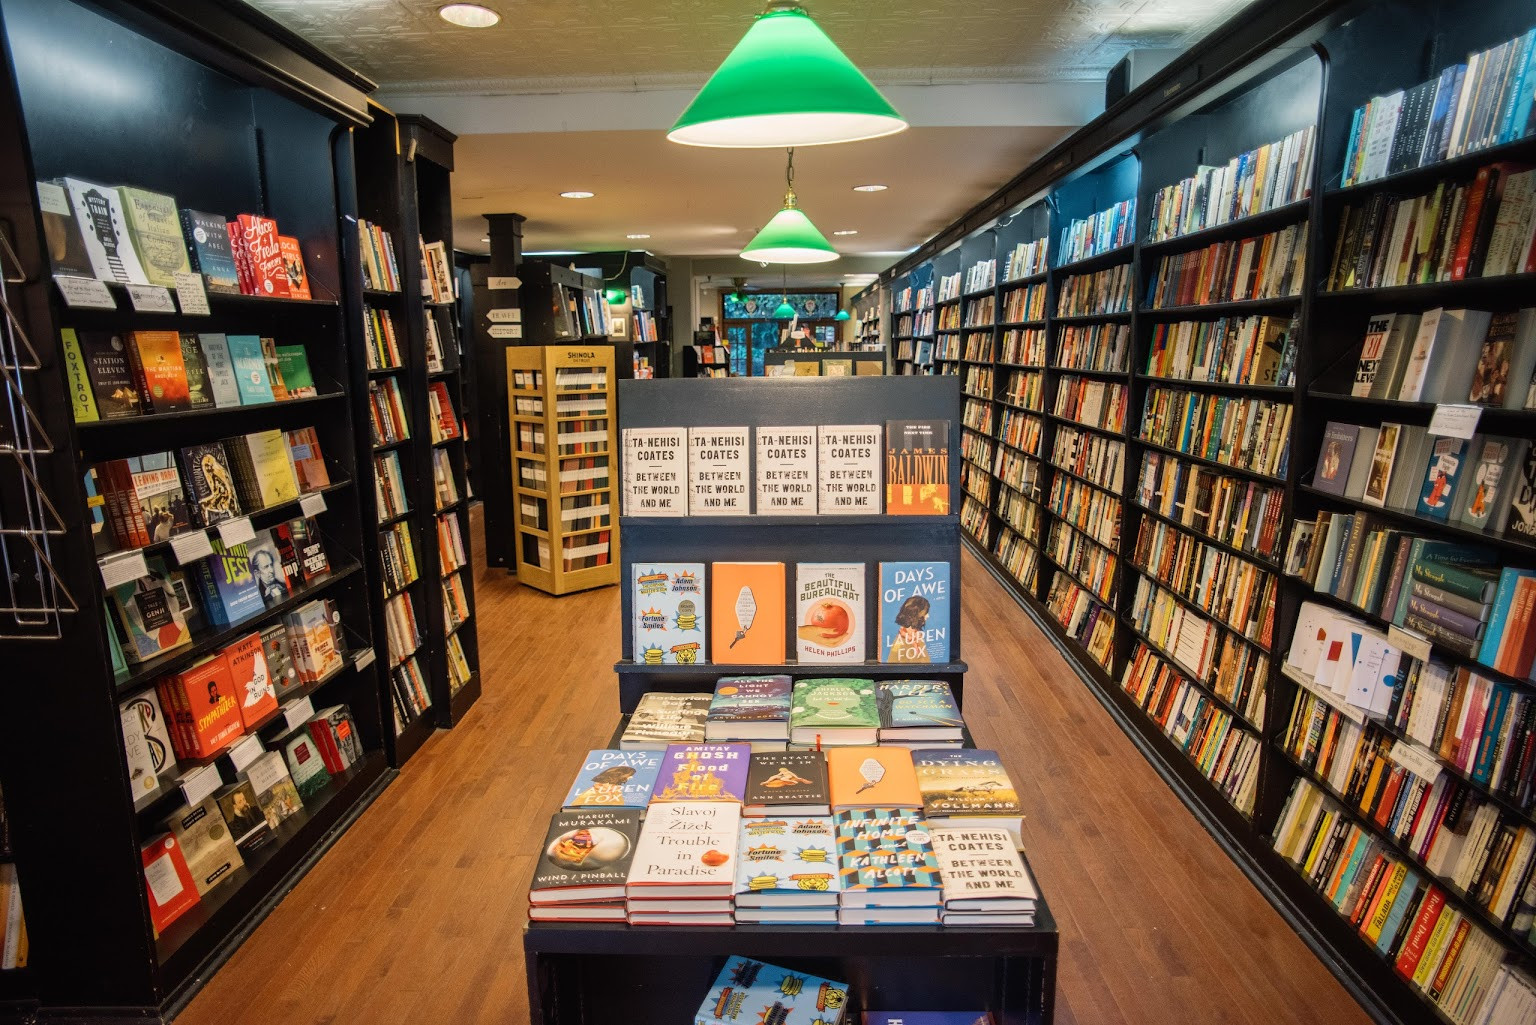 Like shop book. Название книжного магазина. Libreria книжный London. Книжный магазин бук шоп. Bookshop картинка.